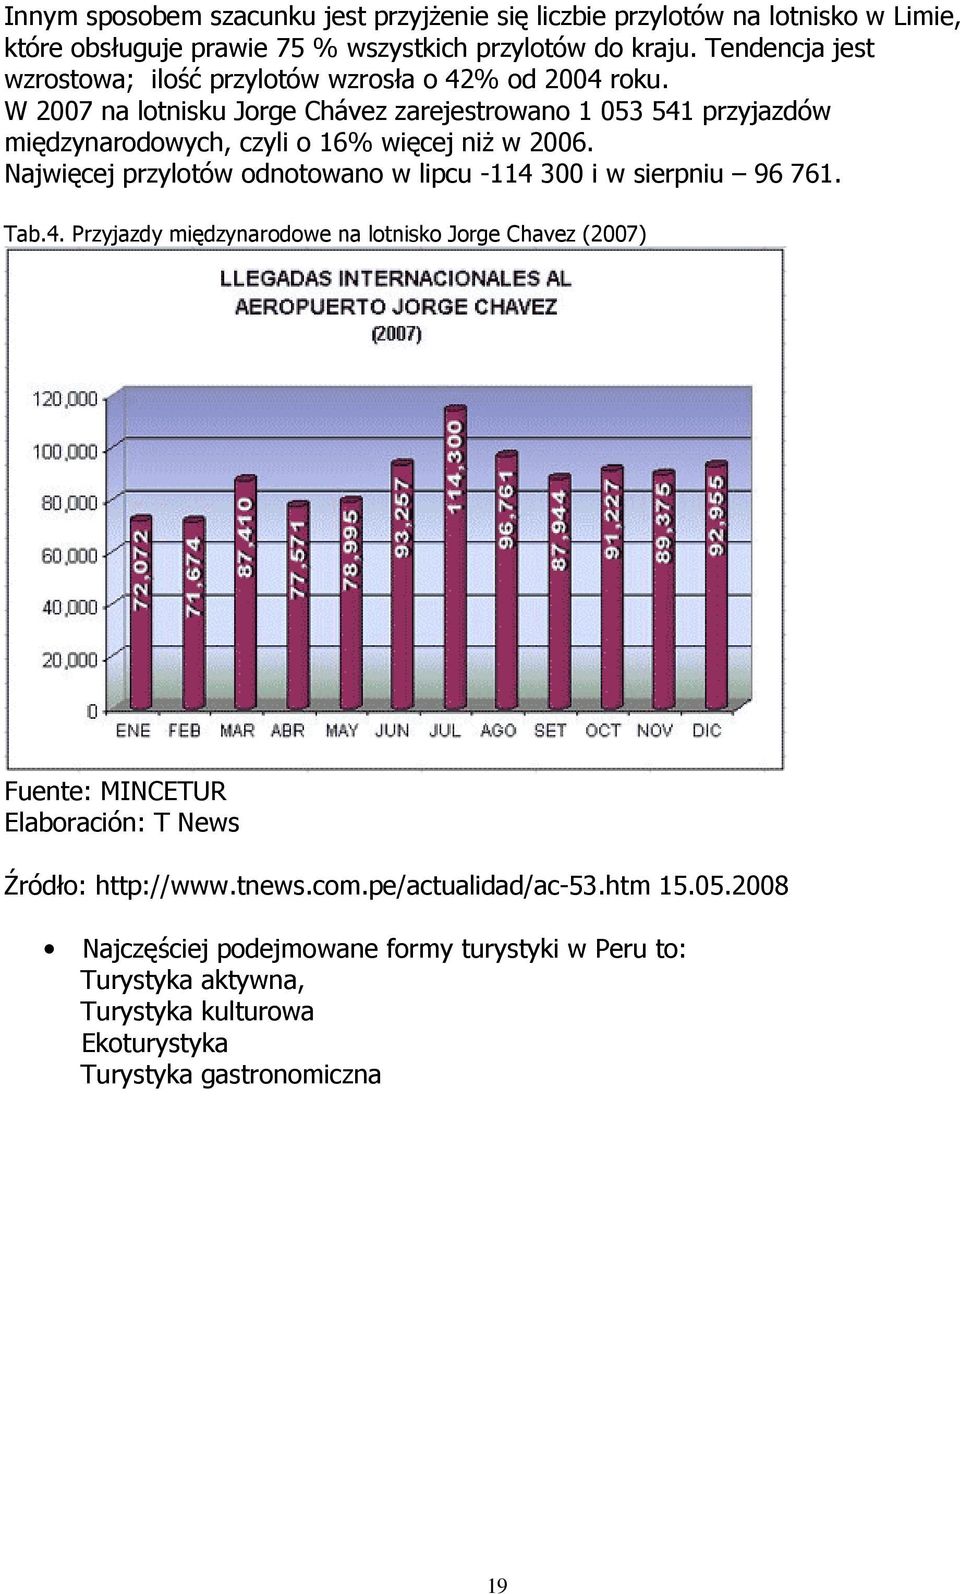 W 2007 na lotnisku Jorge Chávez zarejestrowano 1 053 541 przyjazdów międzynarodowych, czyli o 16% więcej niŝ w 2006.